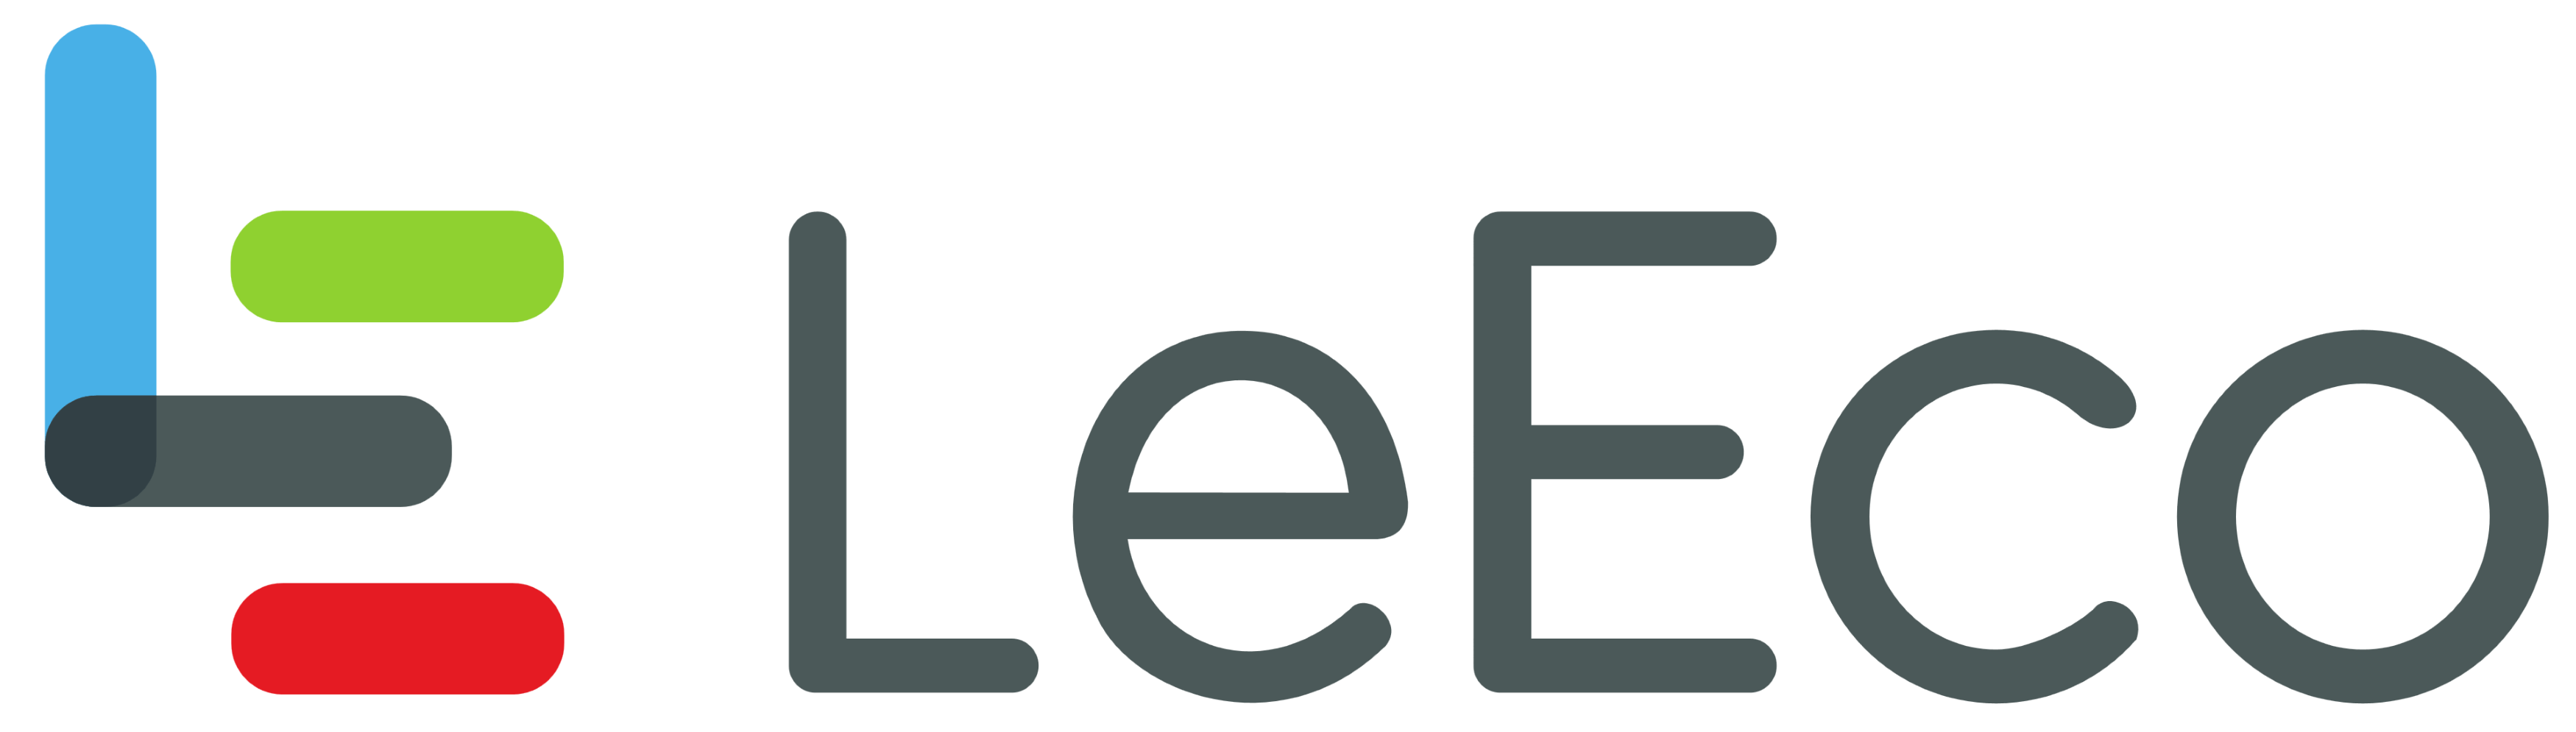 LeEco logo, logotype